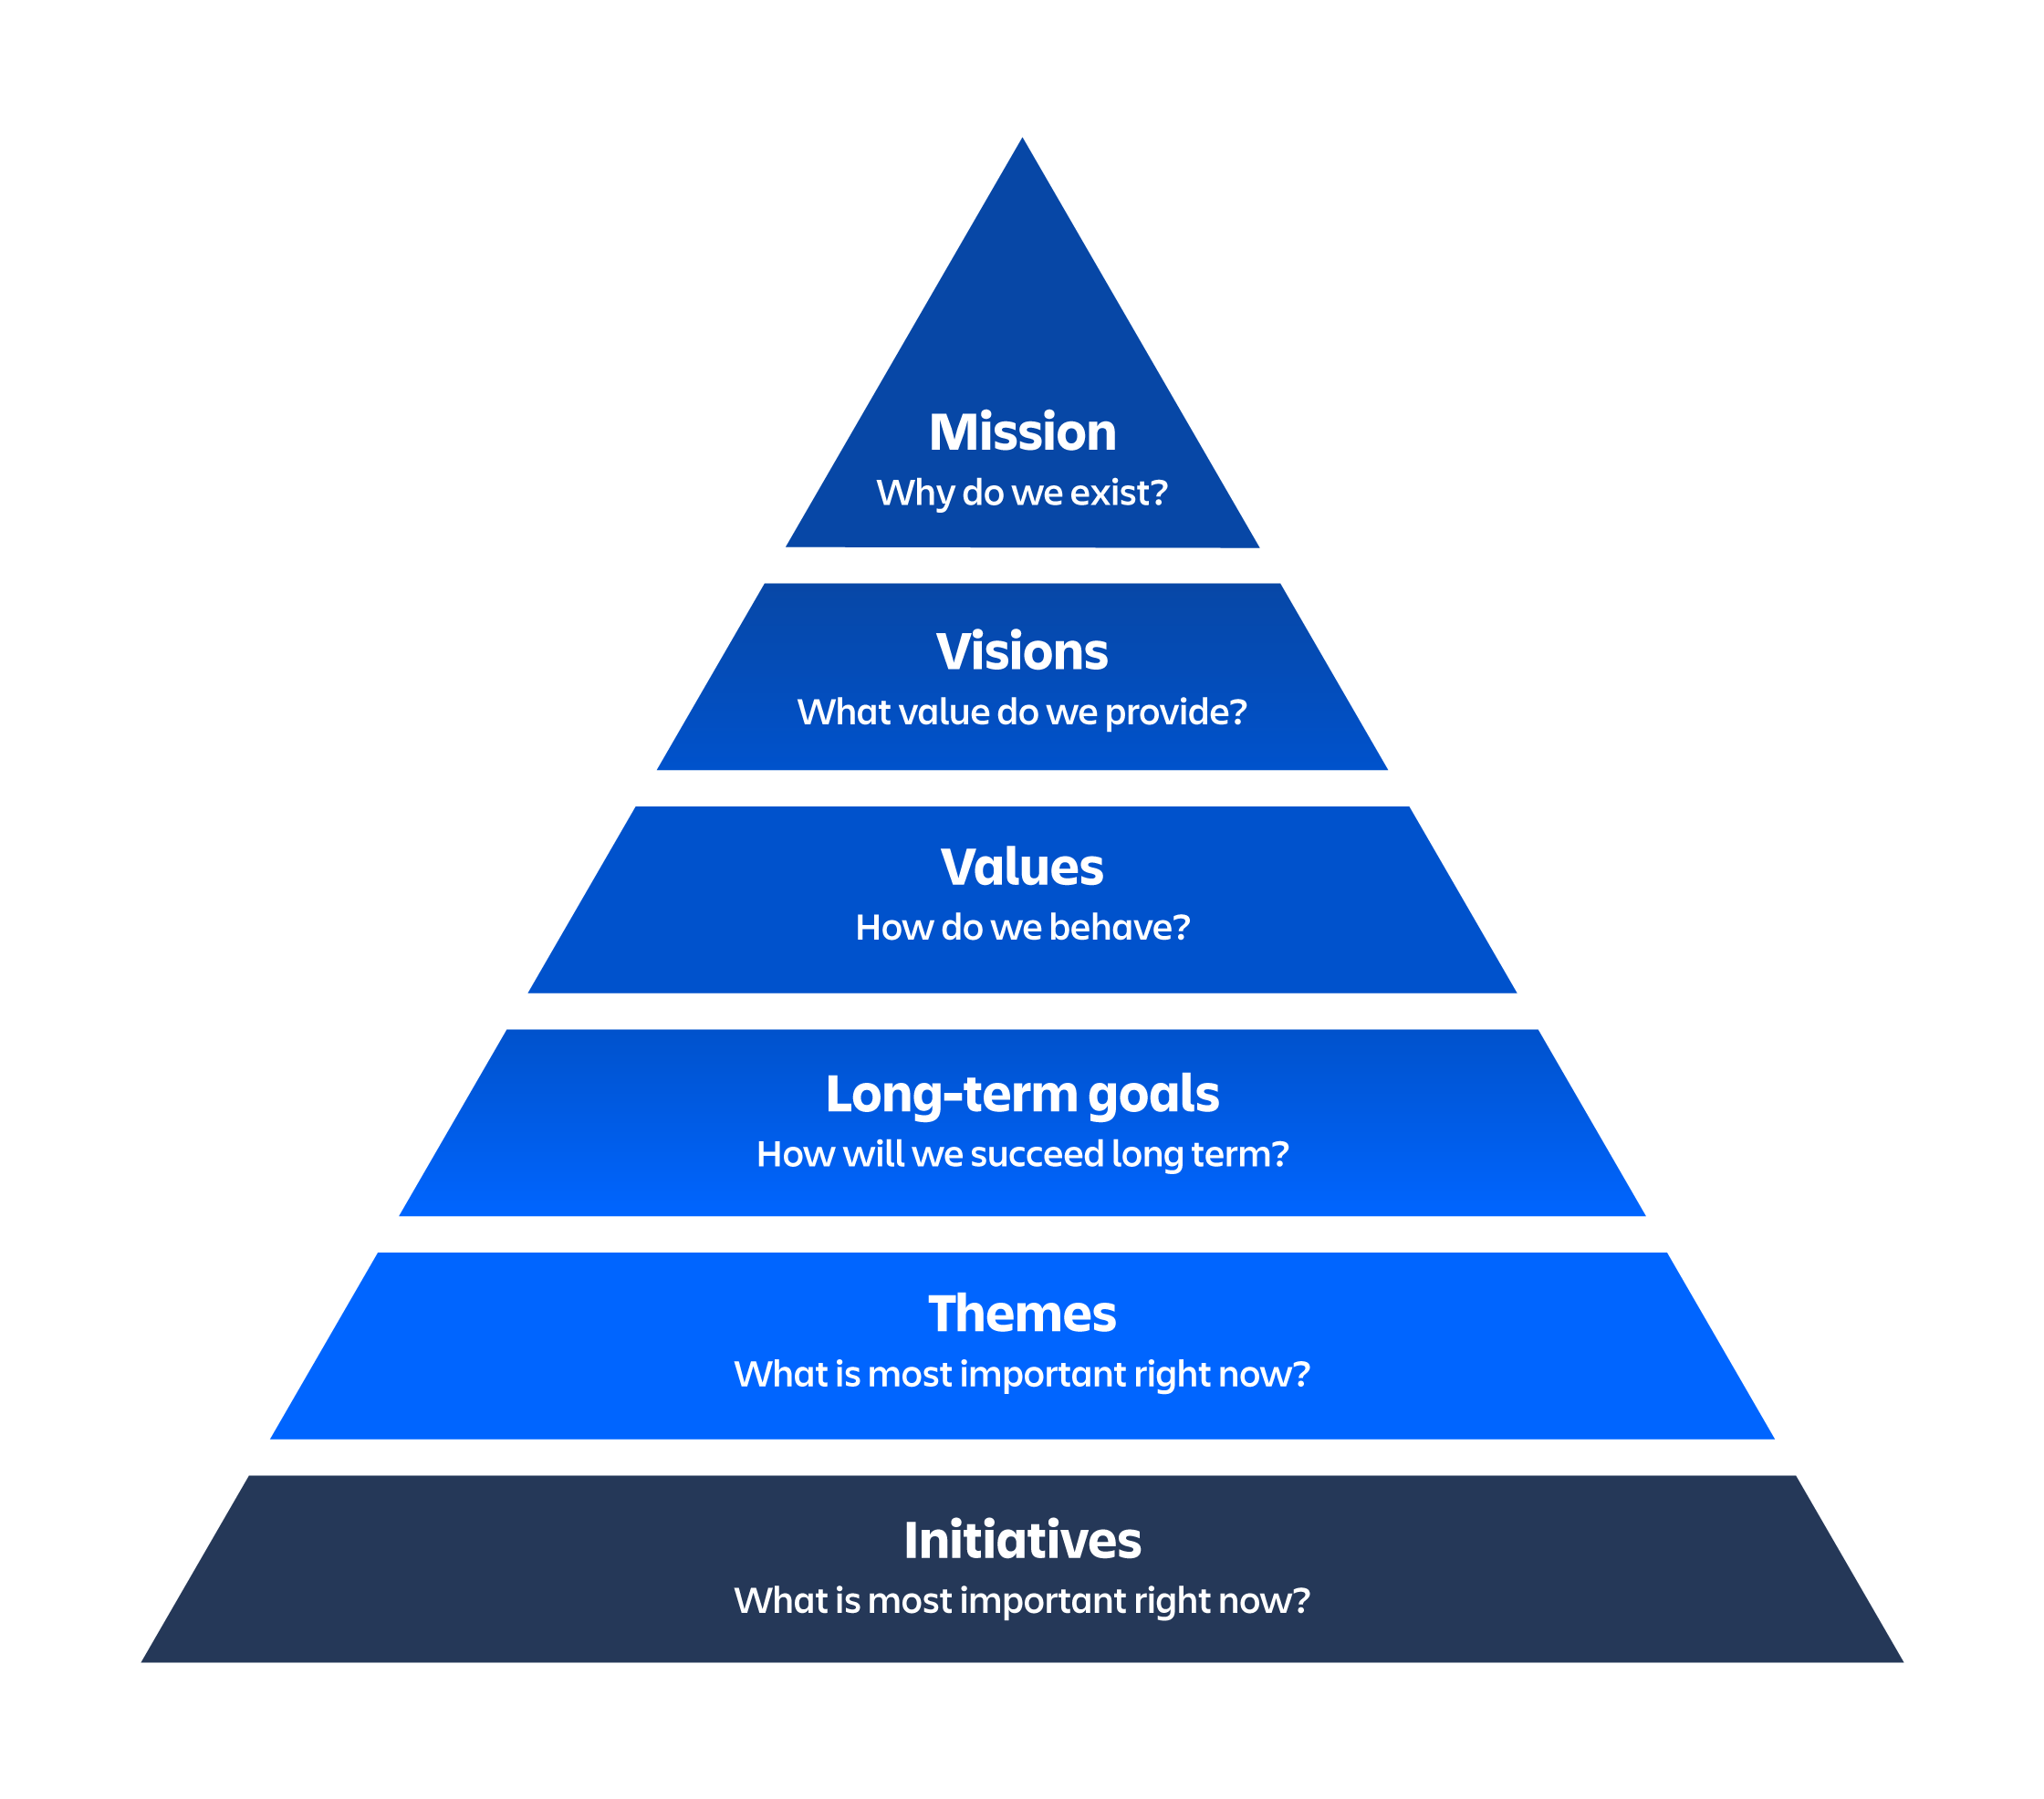 Piramida zarządzania portfelem według zasad Lean z misją na szczycie i inicjatywami u podstawy